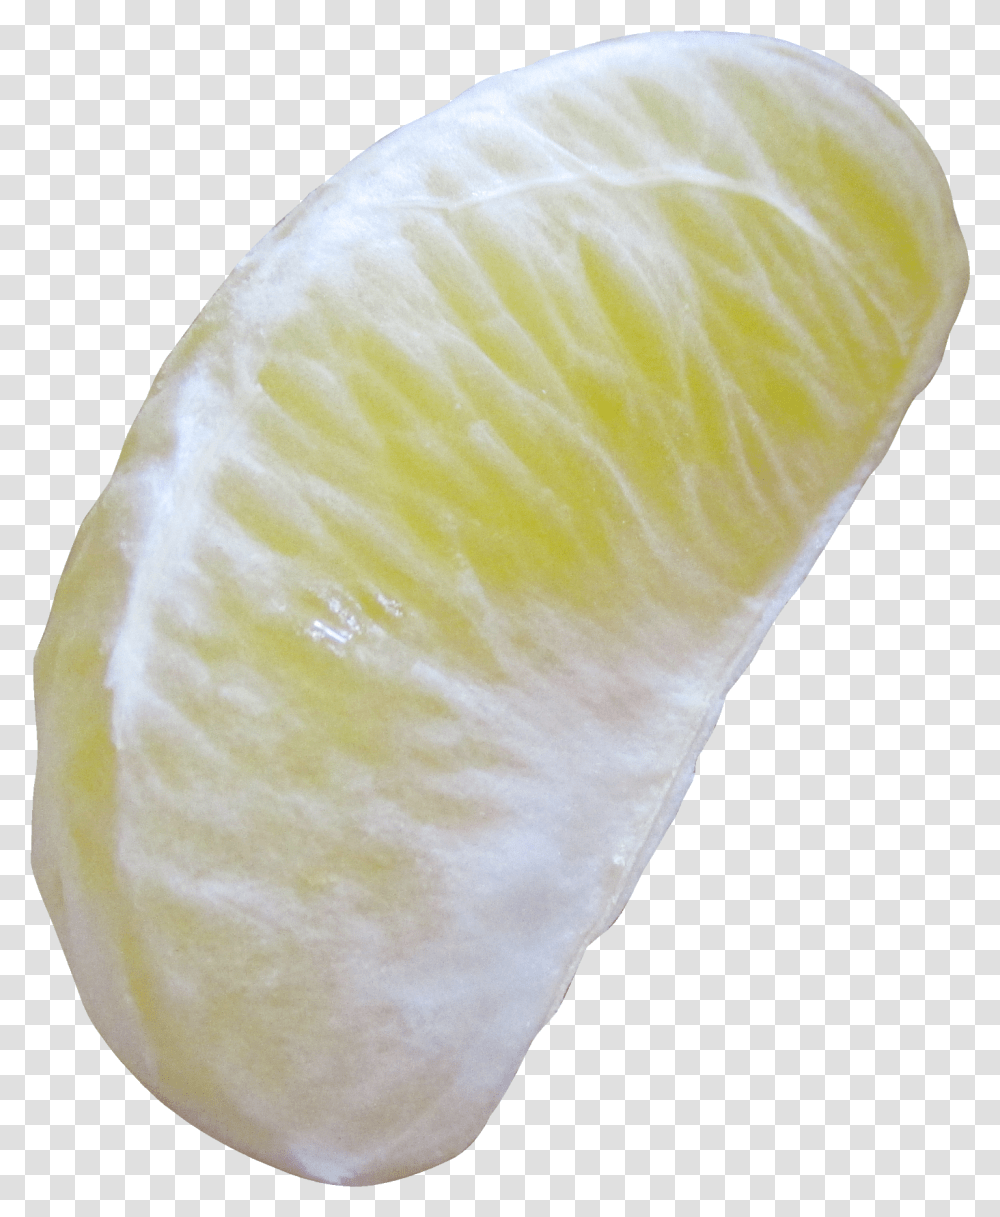 Jpeg Images In Hd September 2020 Lemon, Citrus Fruit, Plant, Food, Grapefruit Transparent Png